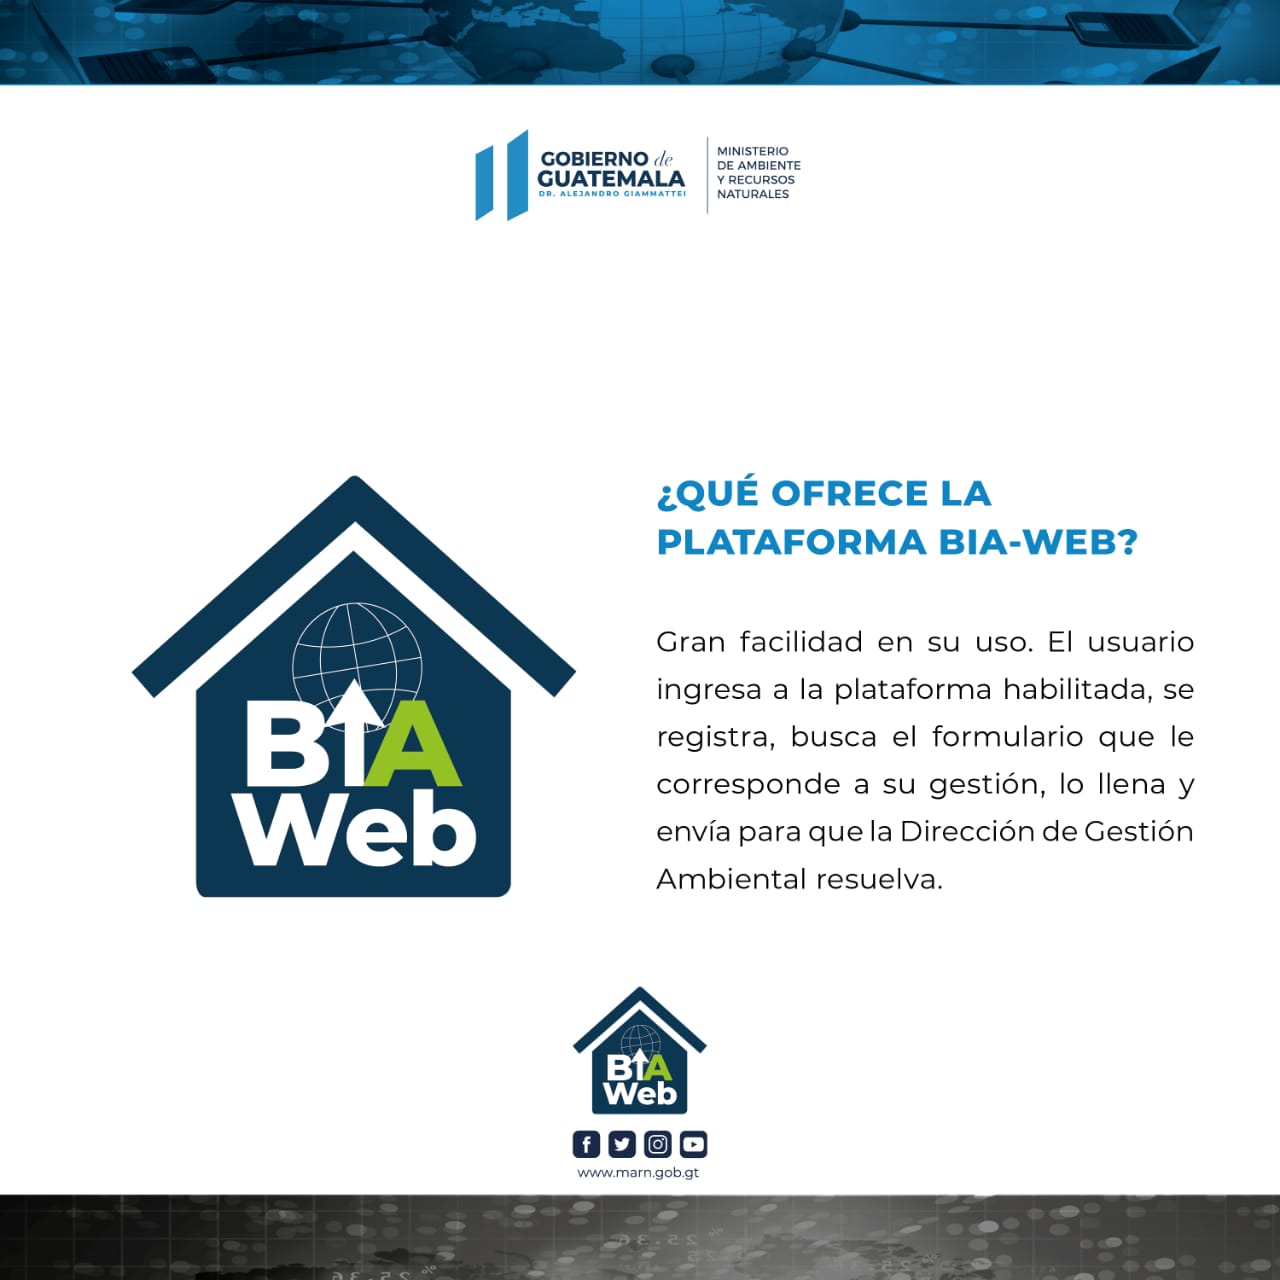 BIA WEB plataforma novedosa al servicio de los guatemaltecos